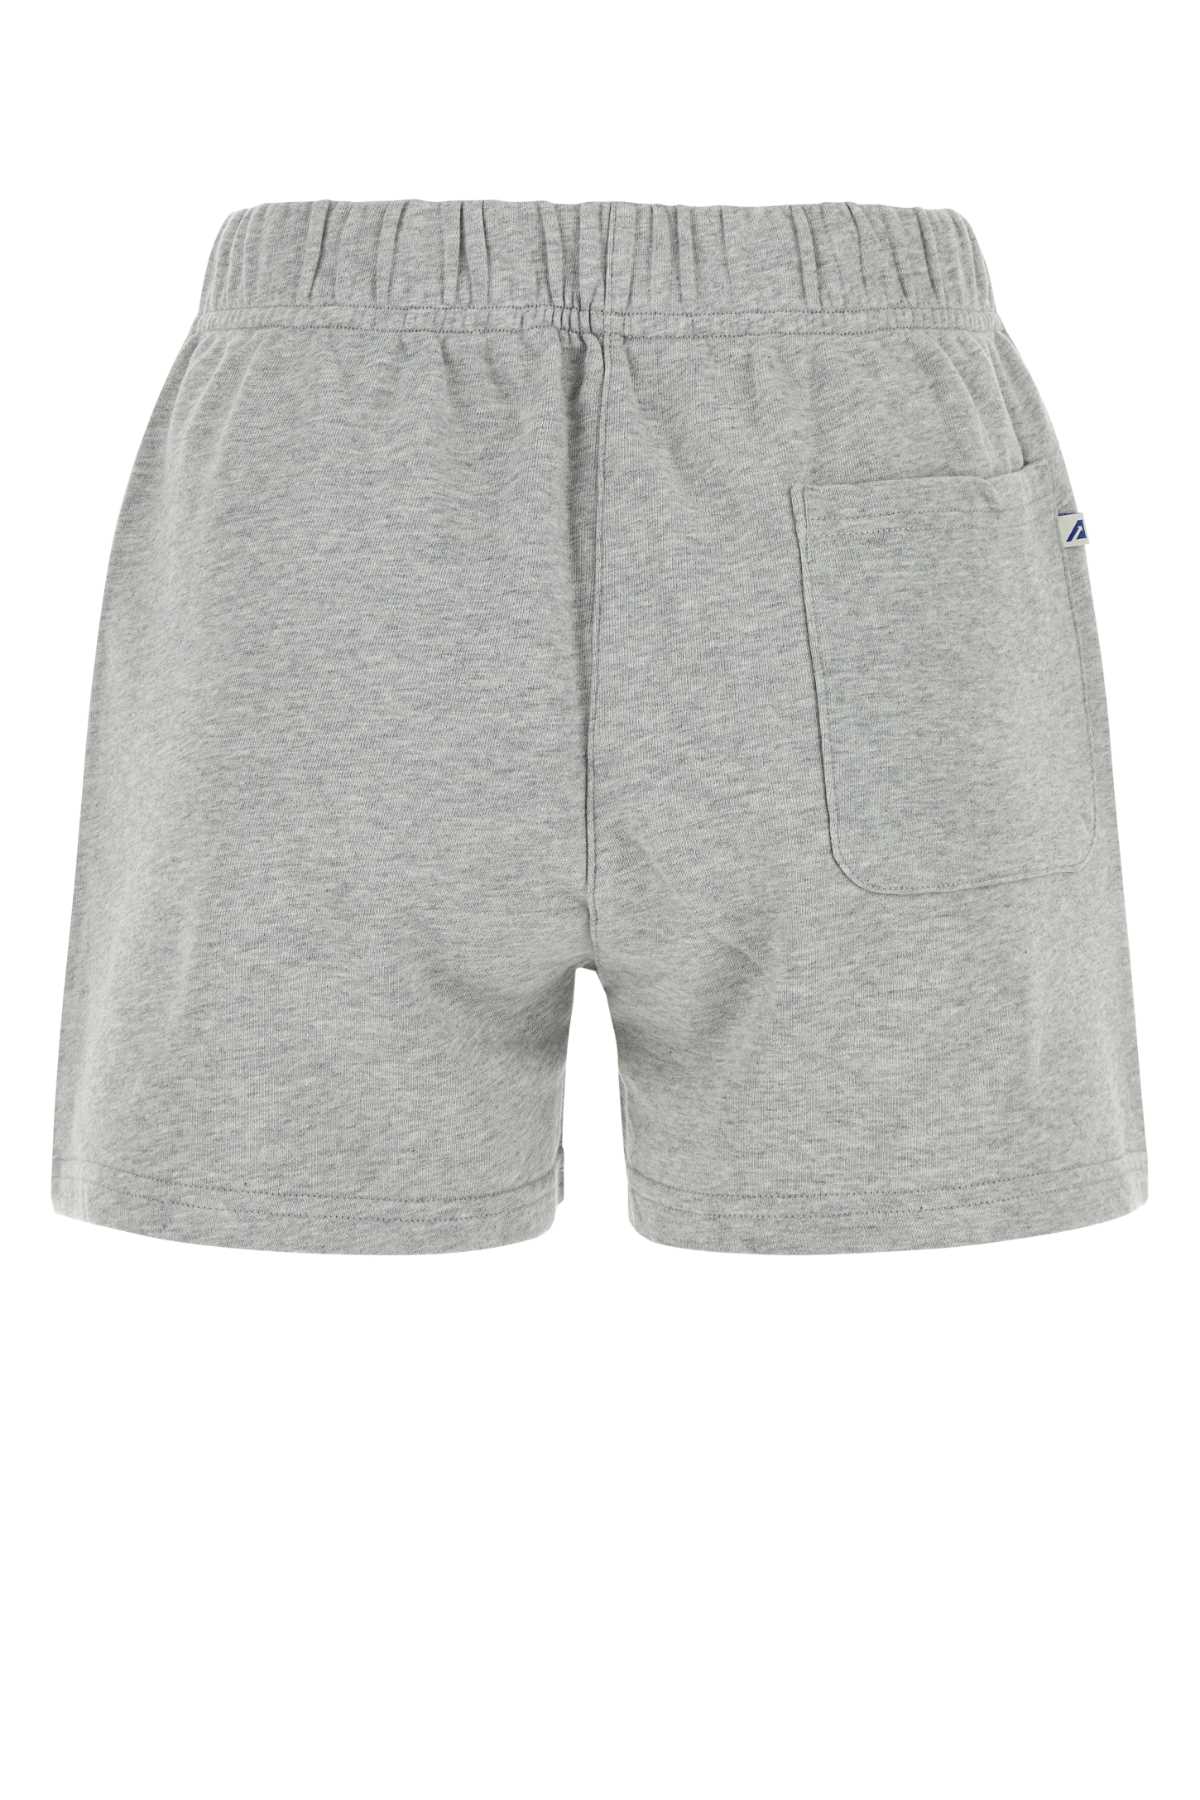 Shop Autry Melange Grey Cotton Shorts In 513m